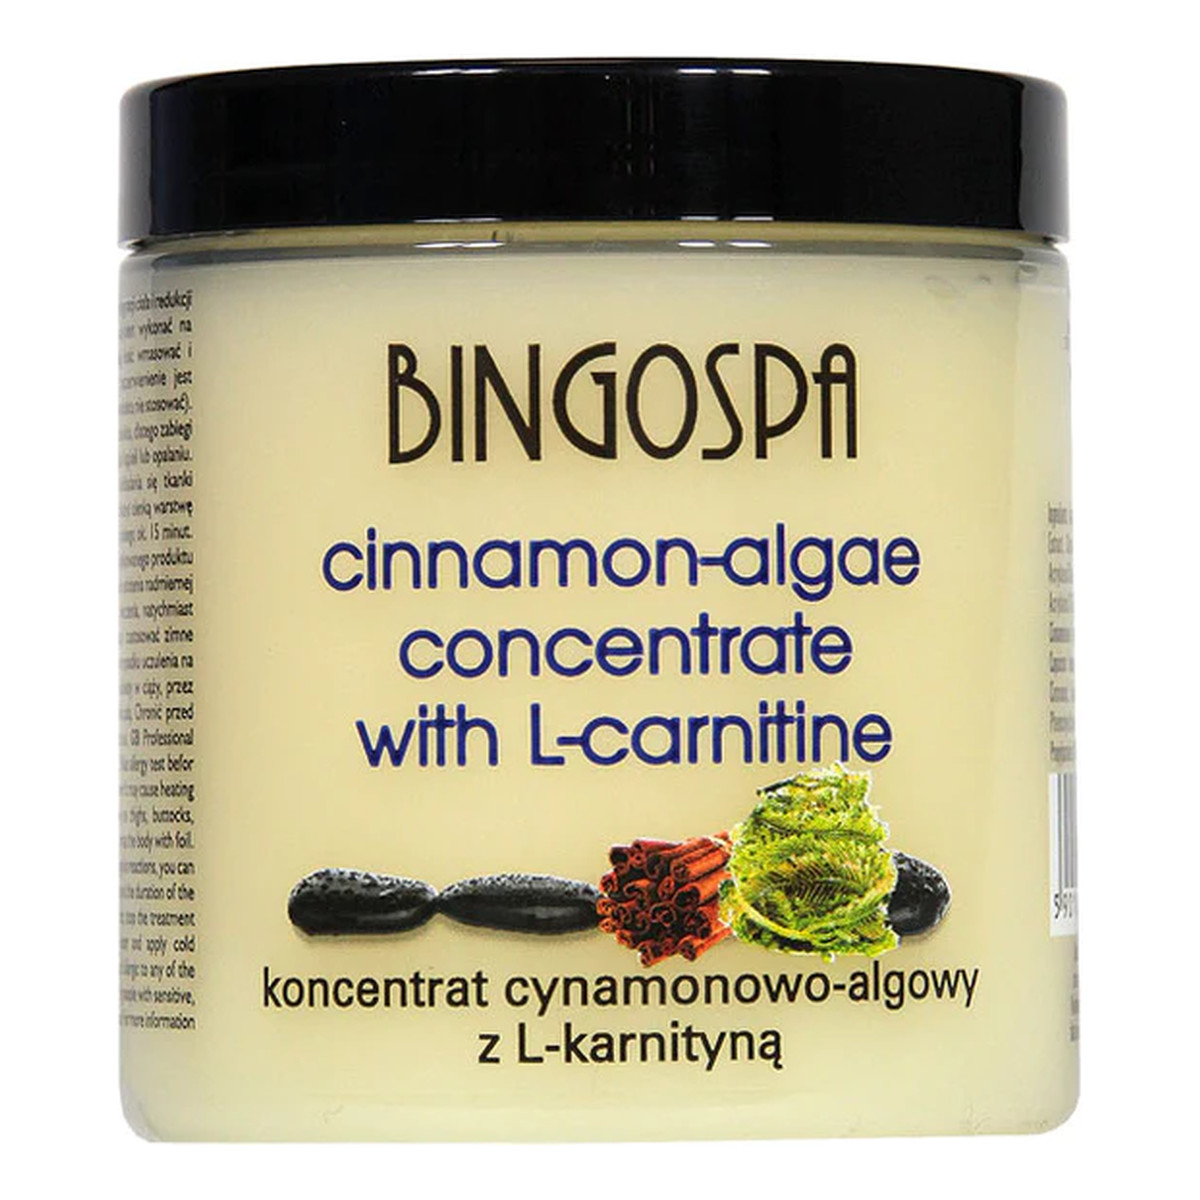 BingoSpa Koncentrat cynamonowo-algowy z L-karnityną 250g